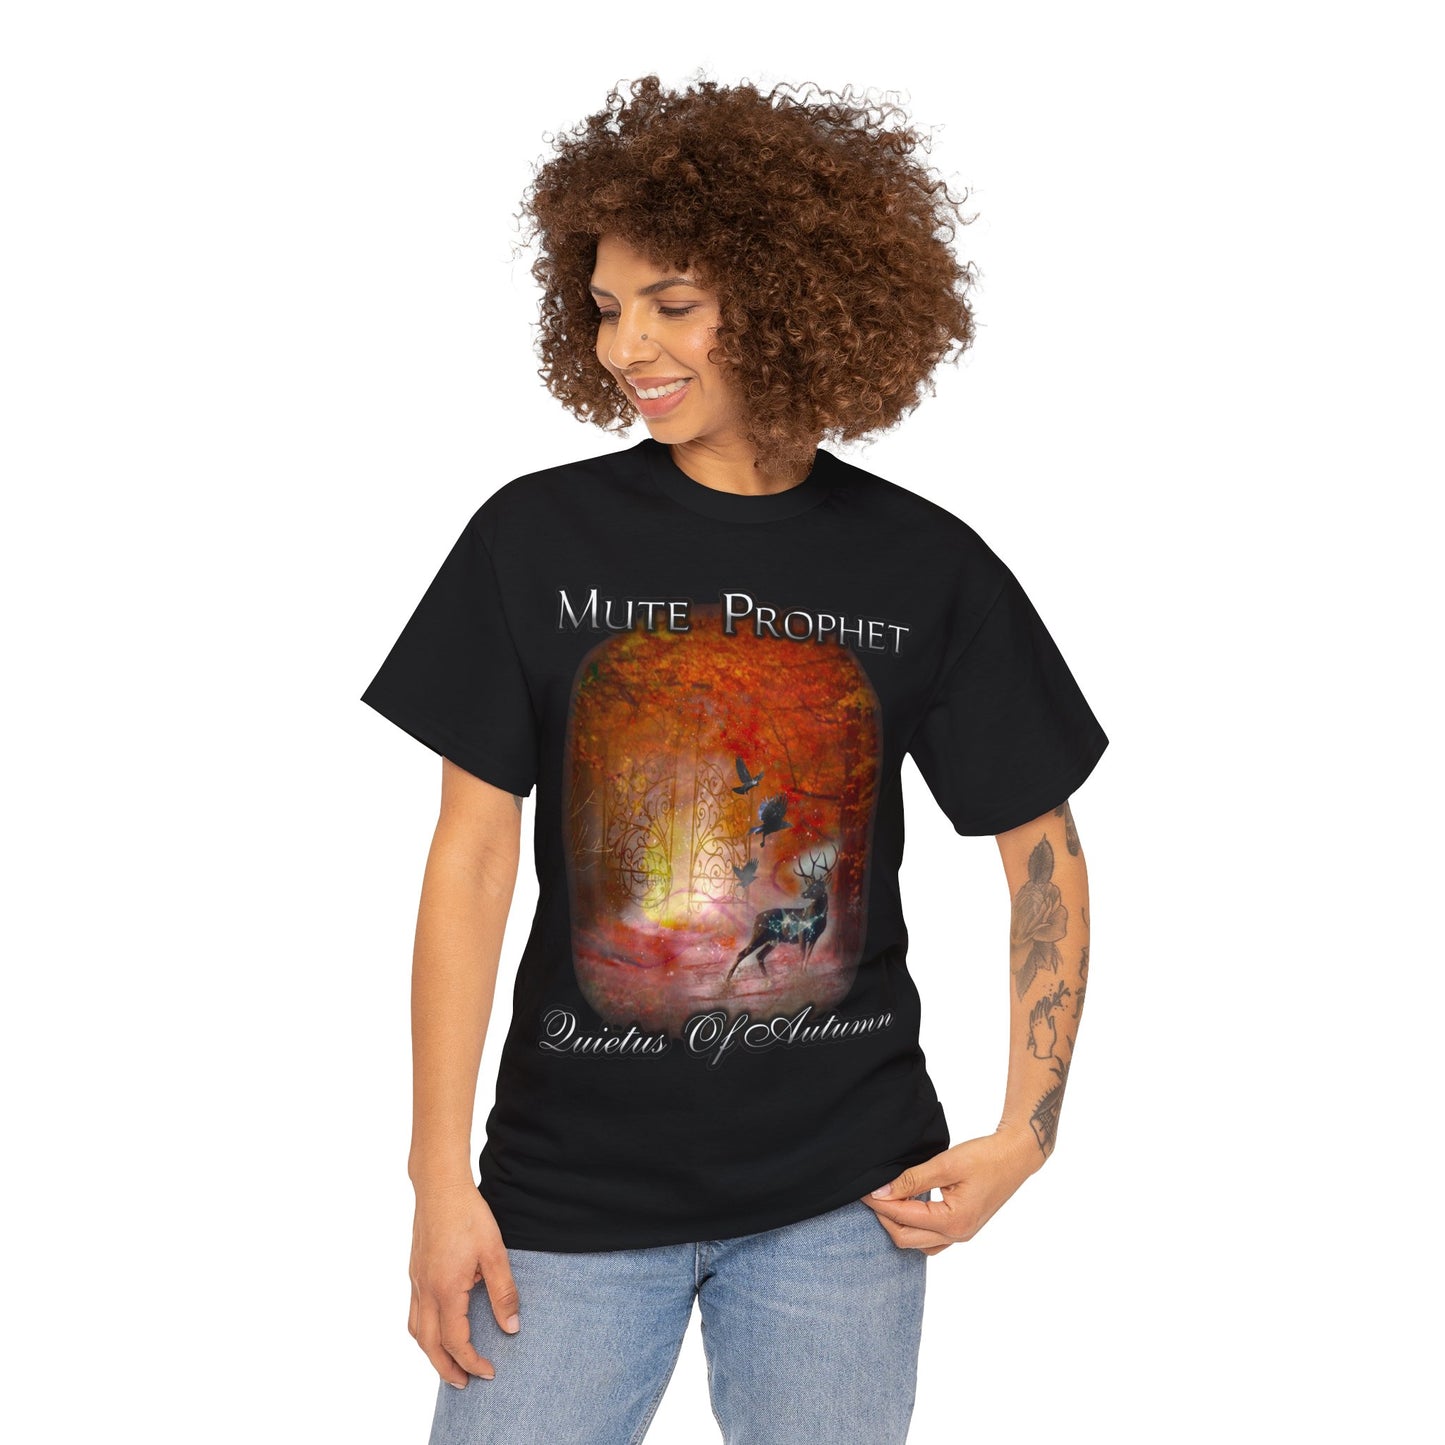 "Quietus of Autumn" T-Shirt